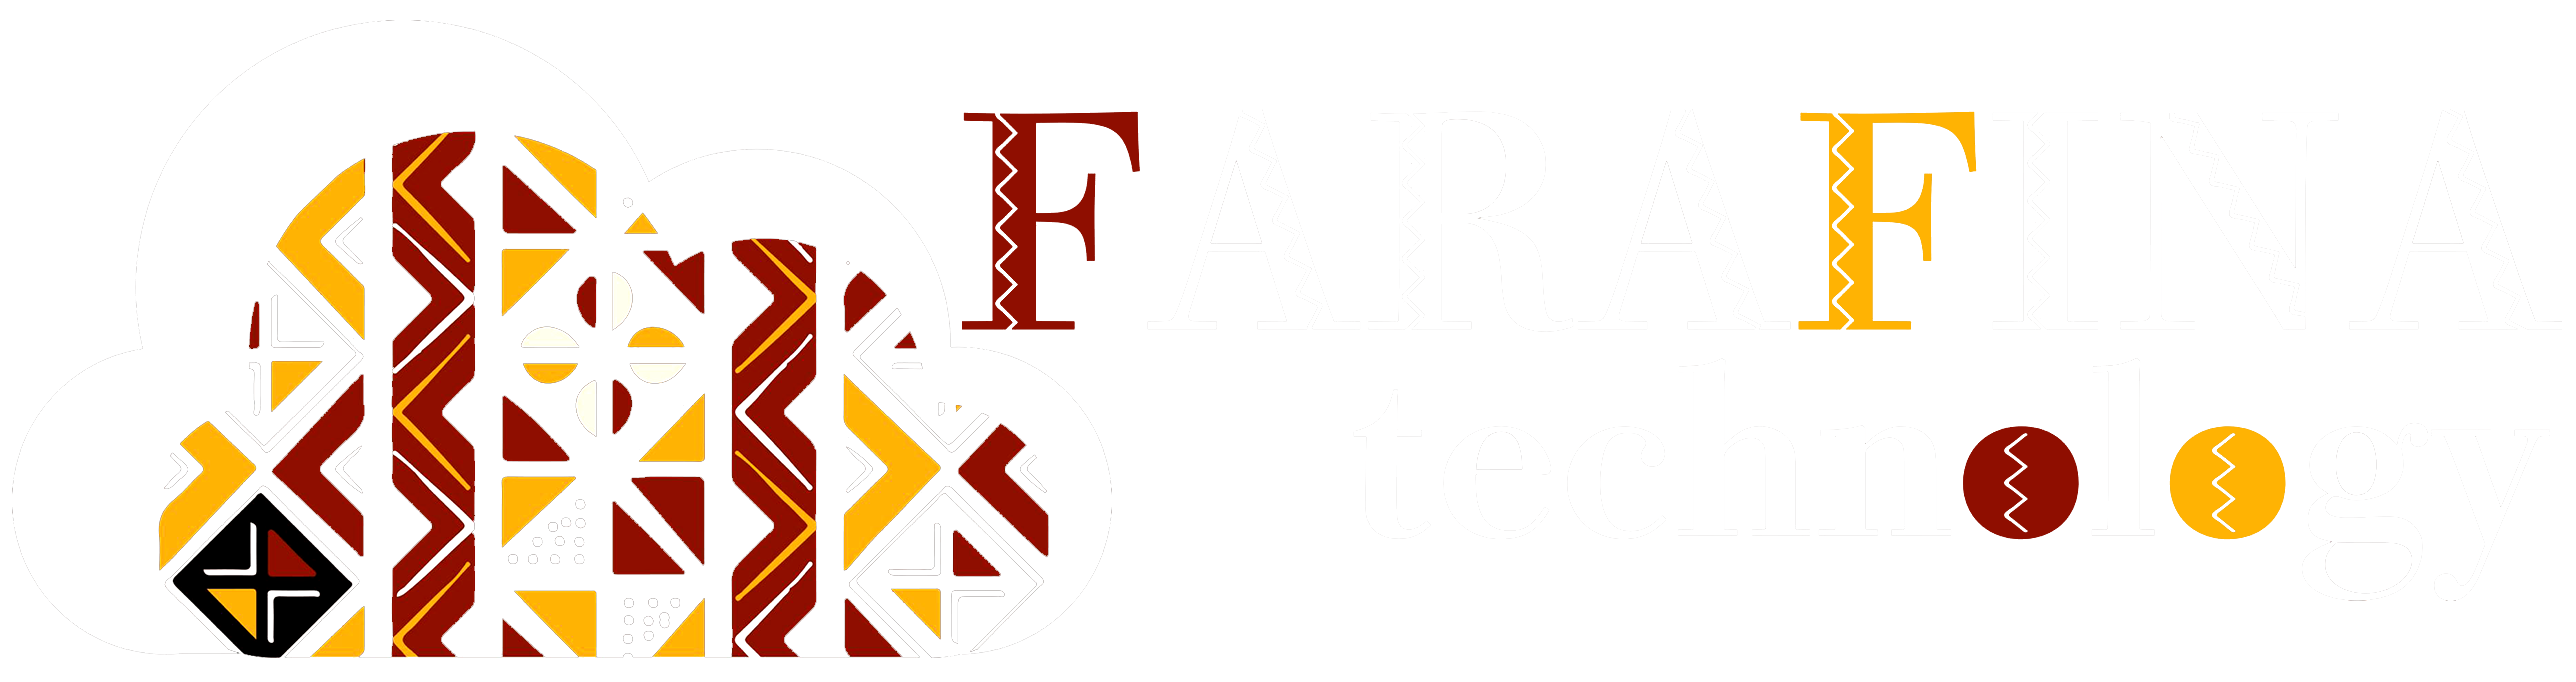 Farafina Technology